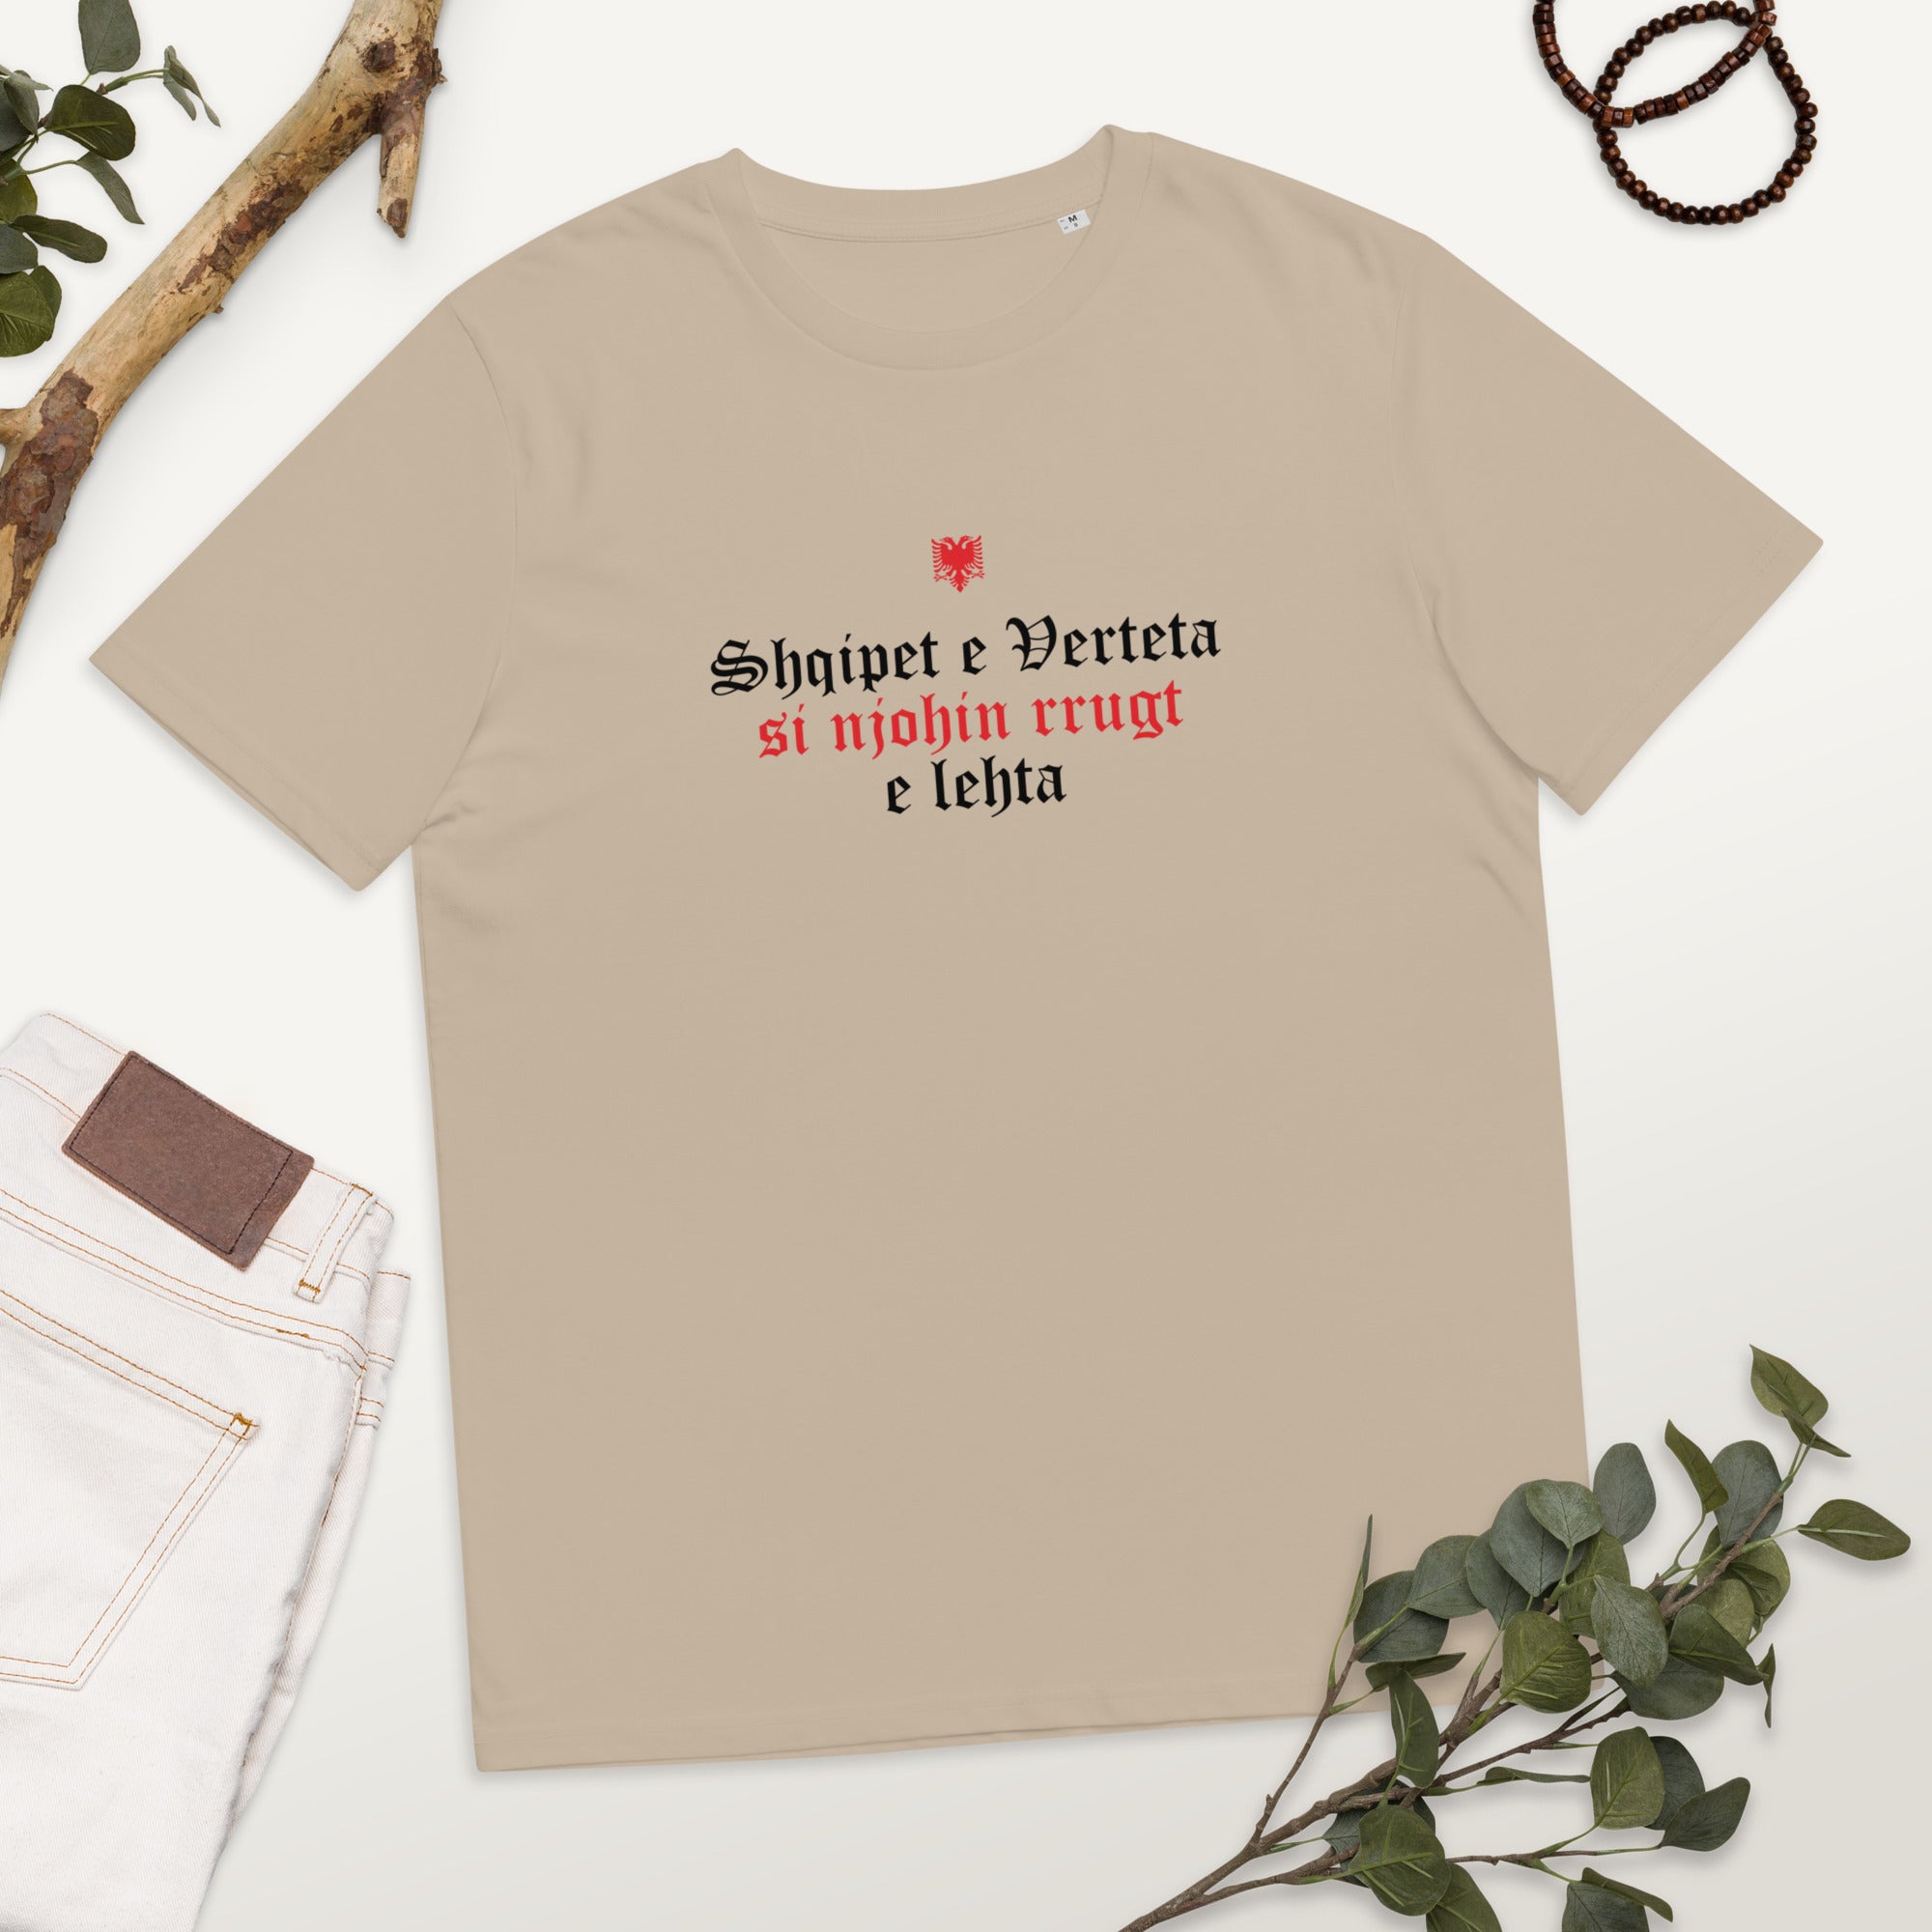 Shqipet e Verteta Albanian Unisex Organic Cotton T-shirt